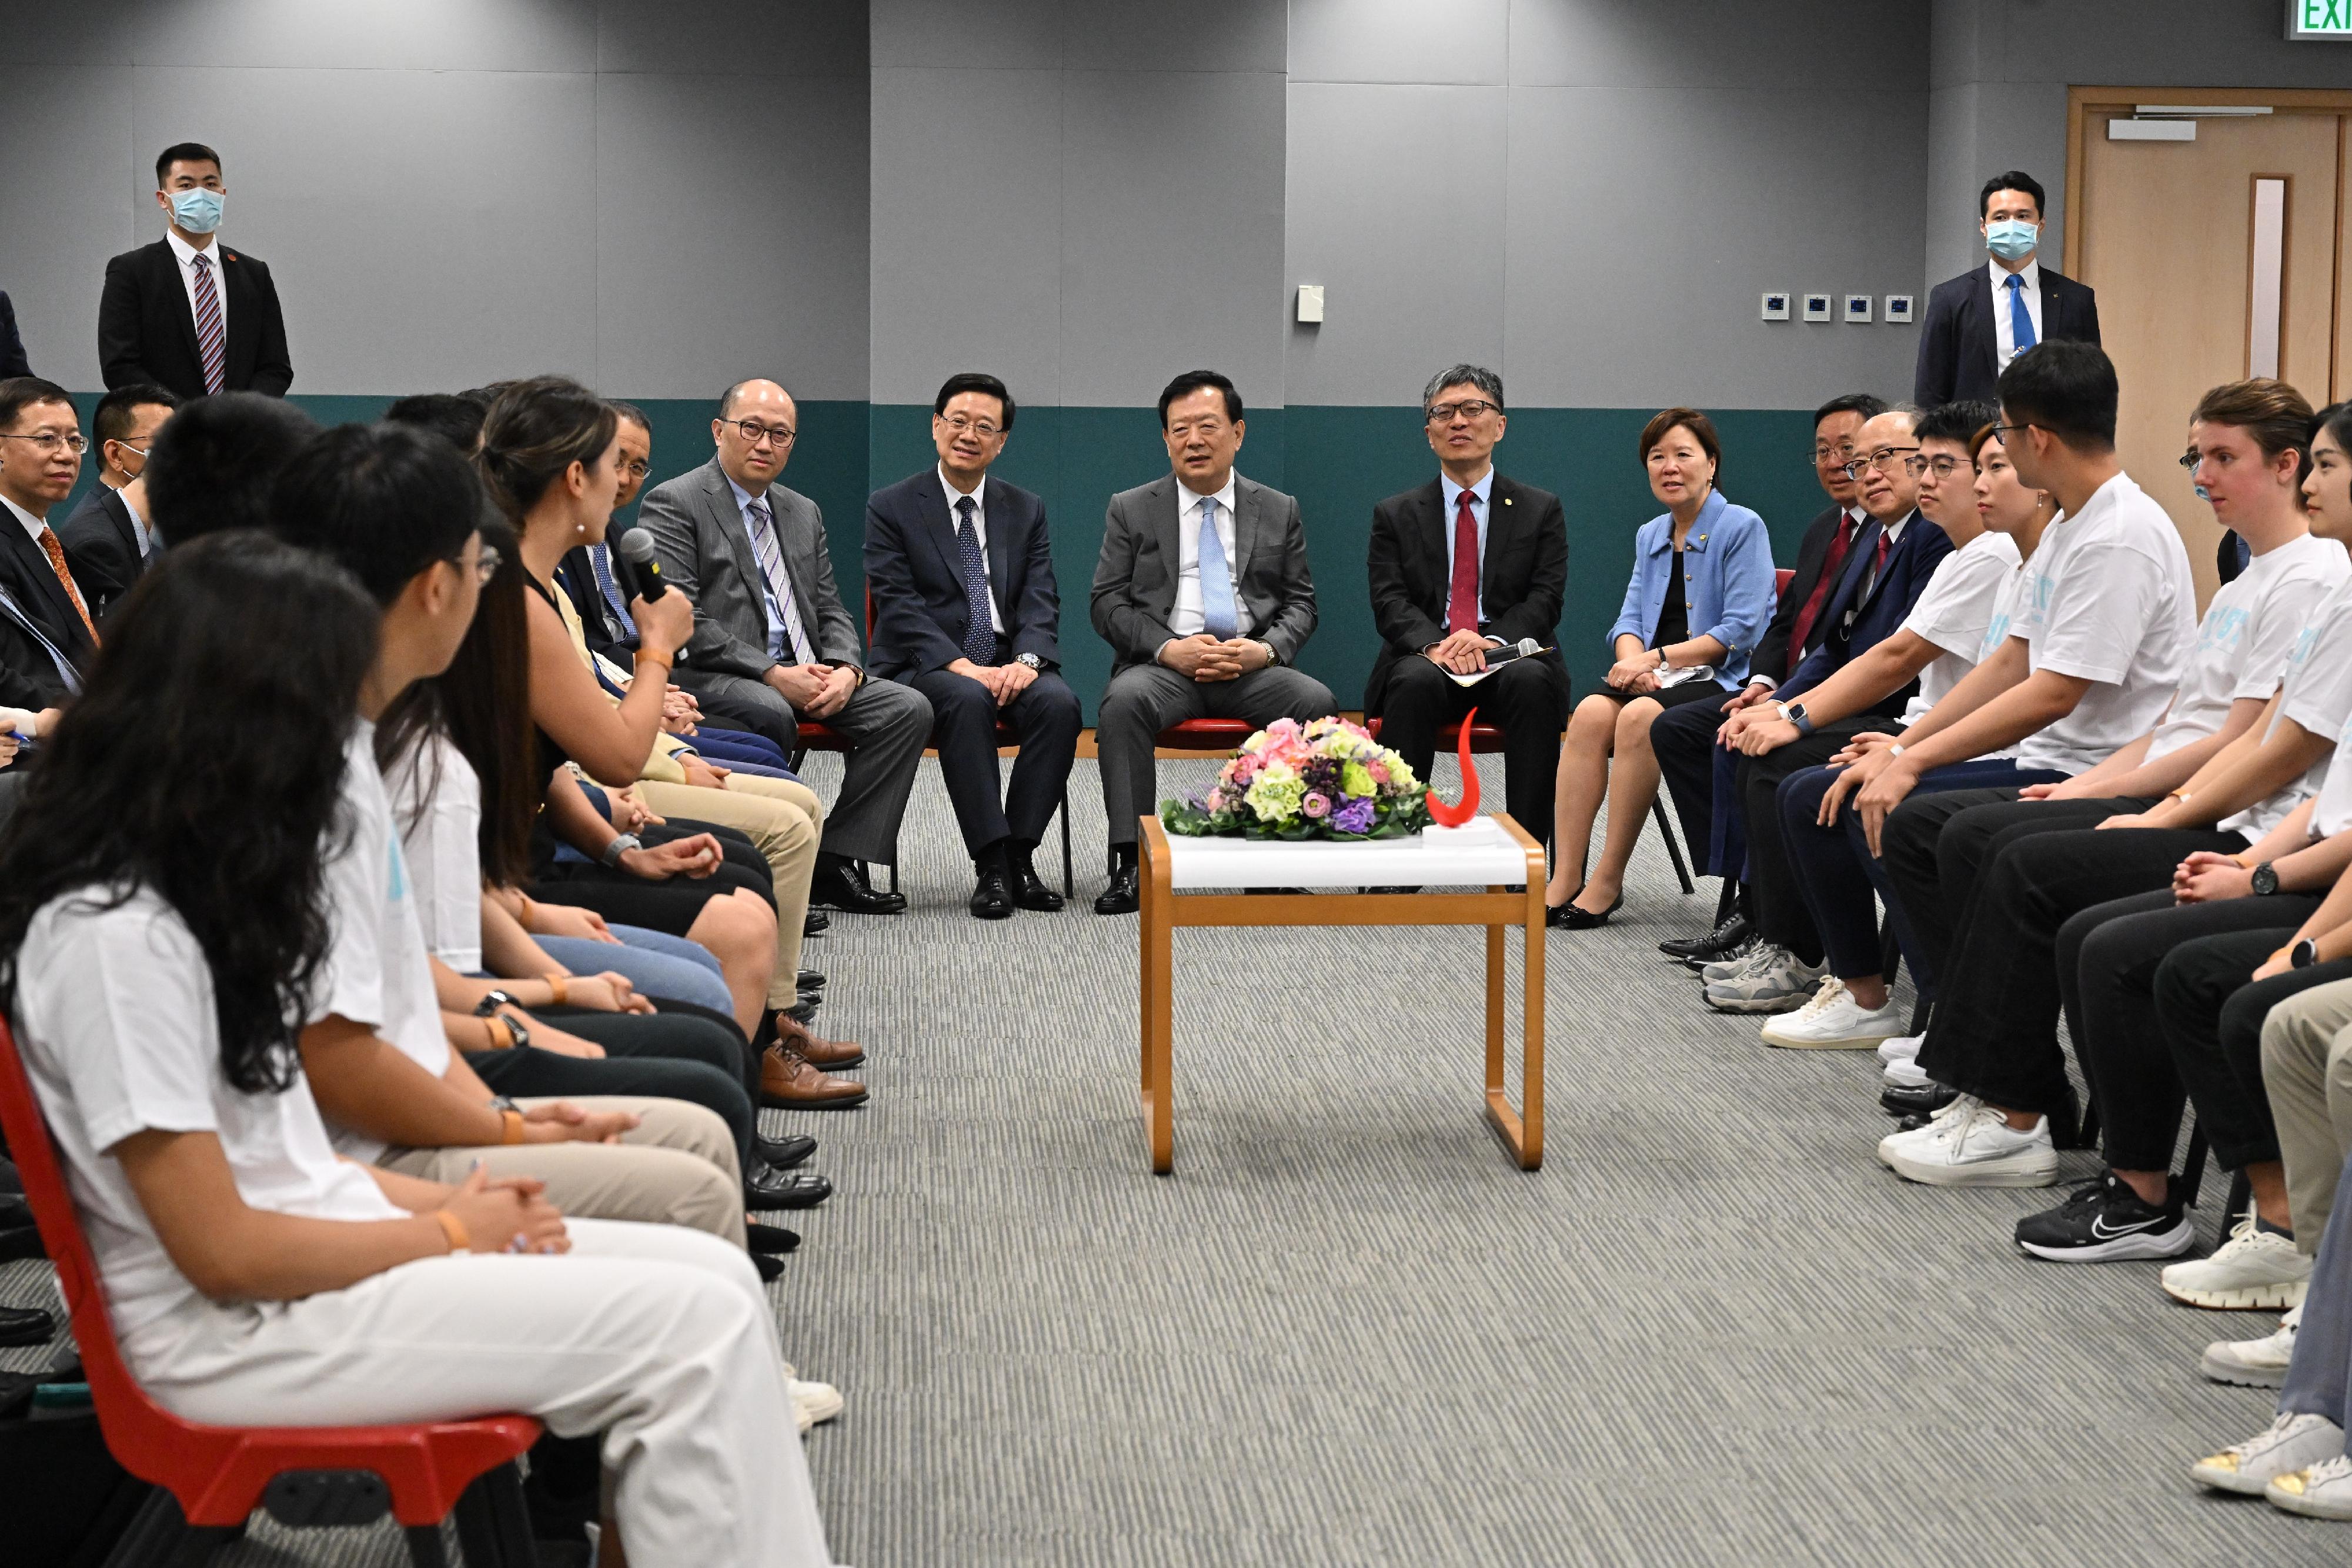 夏寶龍主任及其代表團與科大教職員和學生代表進行交流。